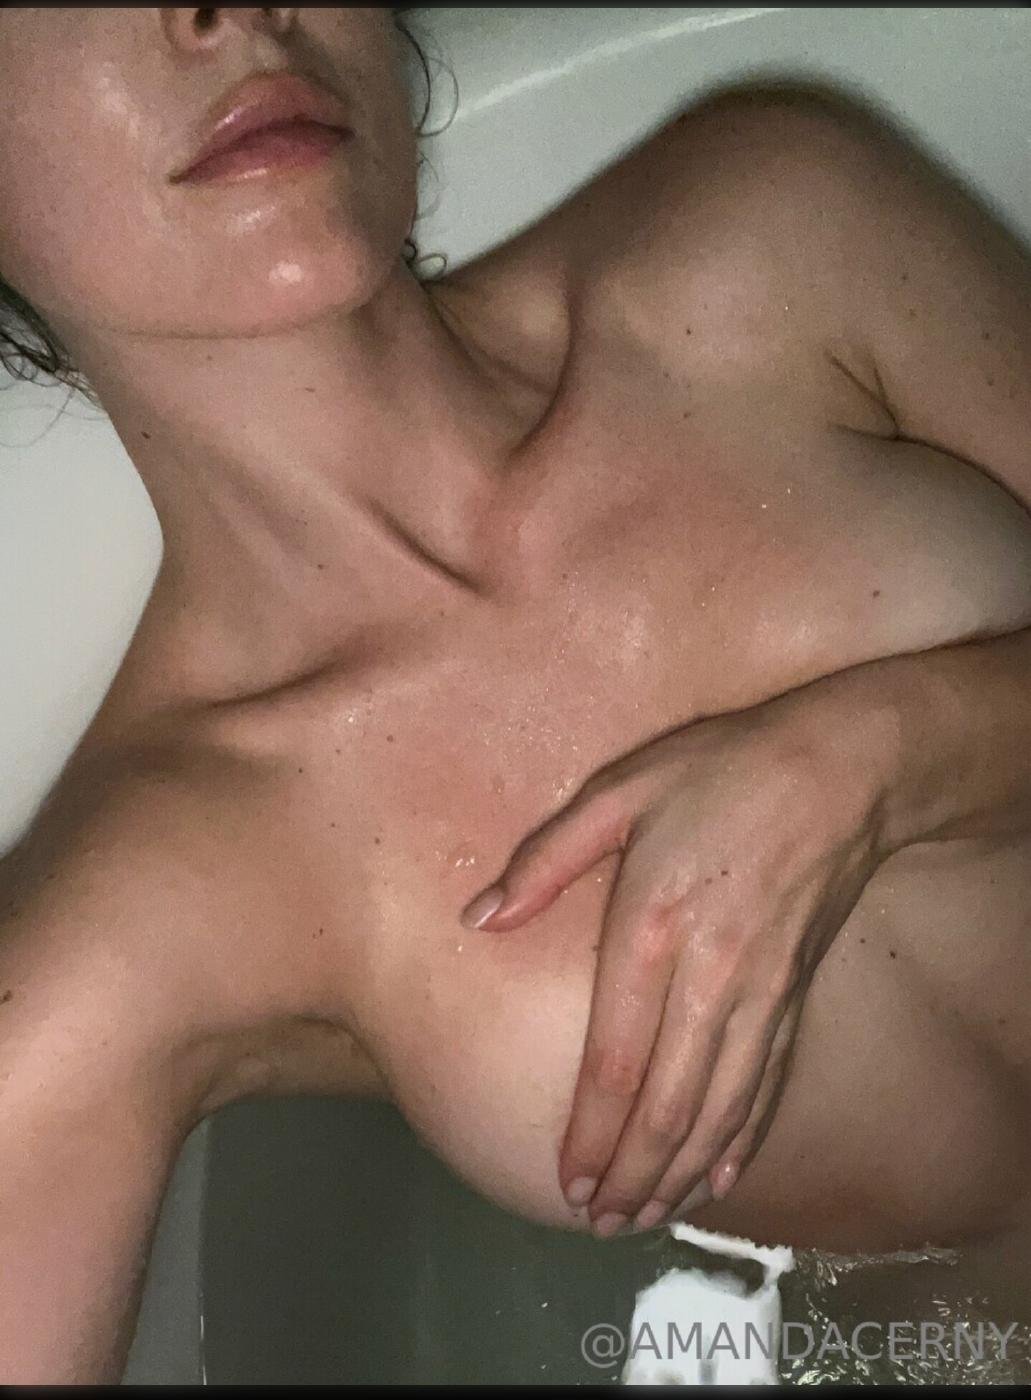 amanda cerny nude boobs nipple flash onlyfans set leaked QPAAXF